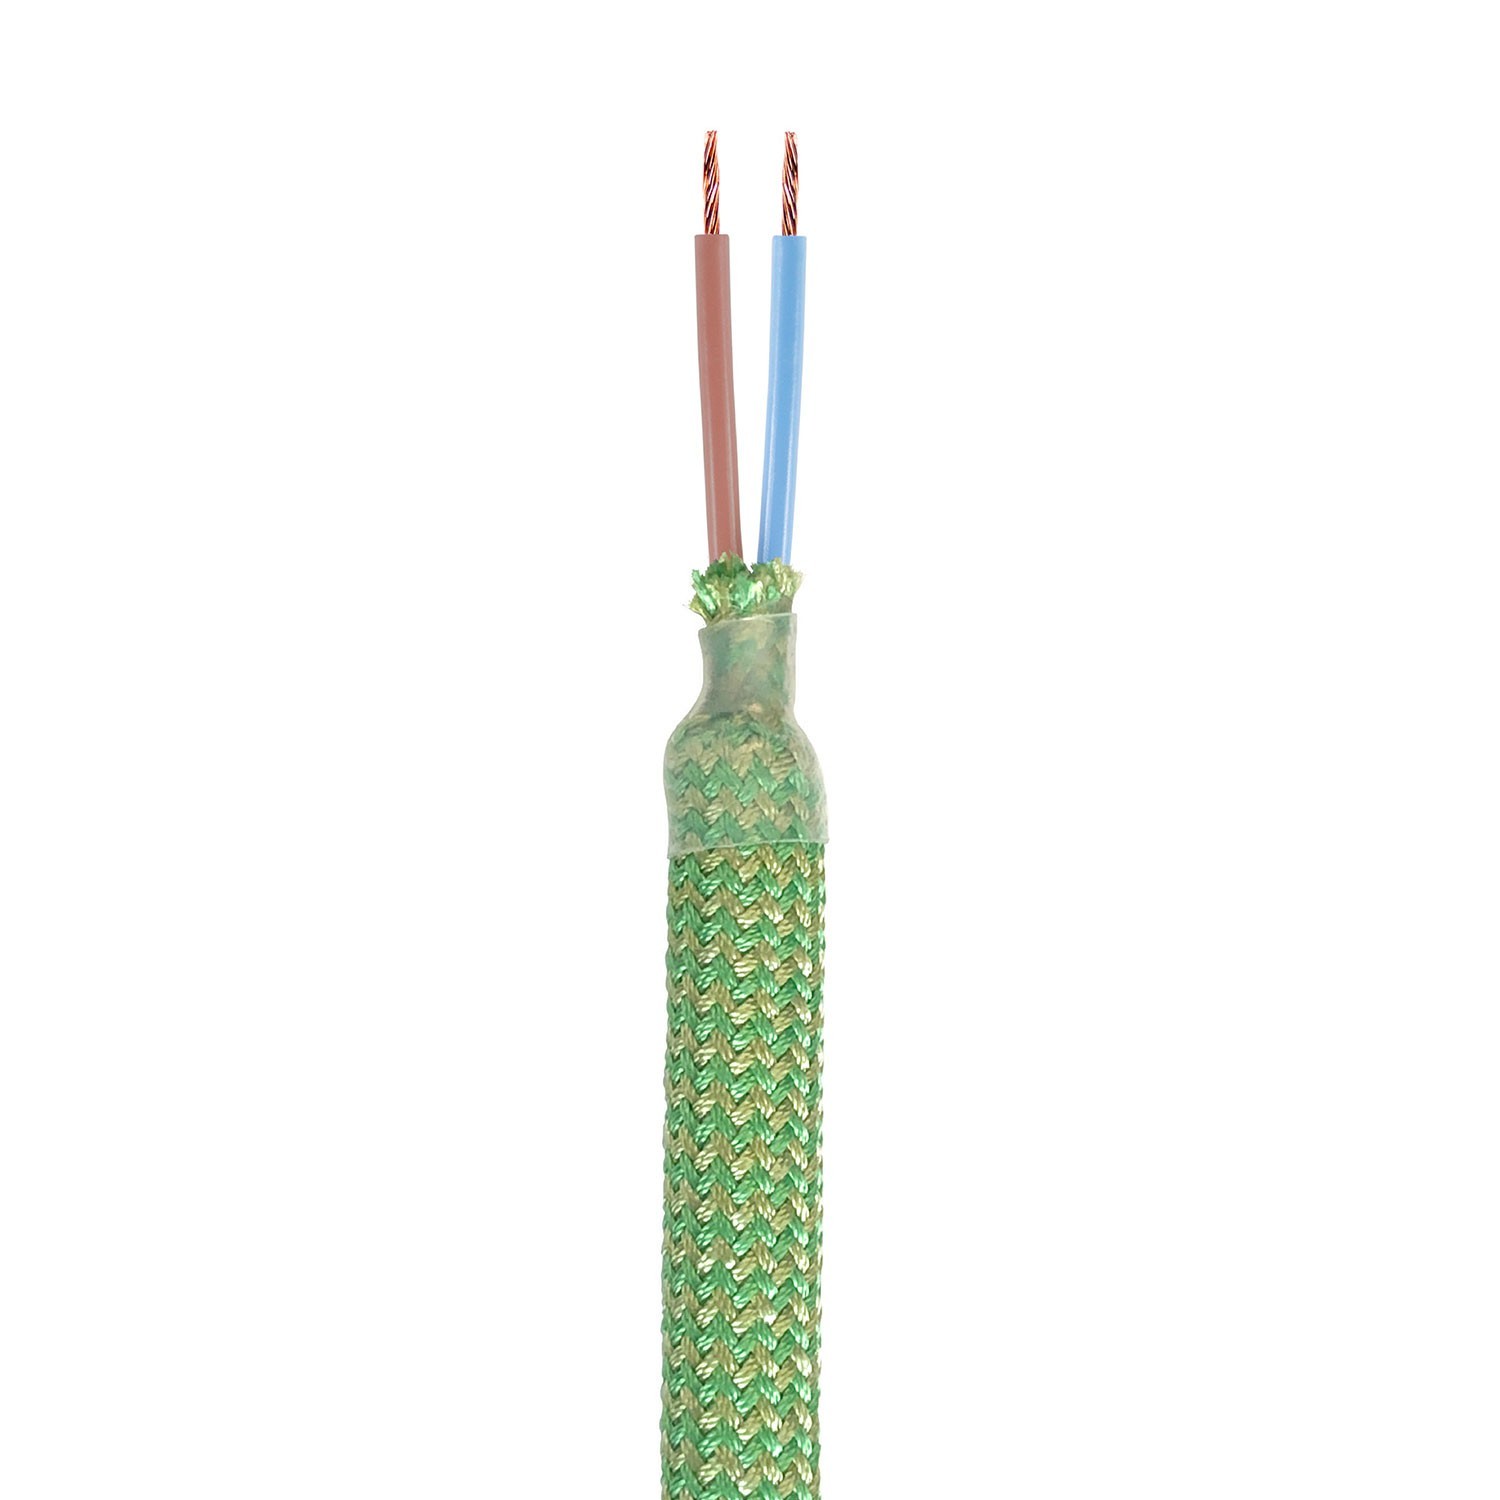 Kit Creative Flex fleksibelt rør med græsgrøn RM77 tekstilforing og metalterminaler